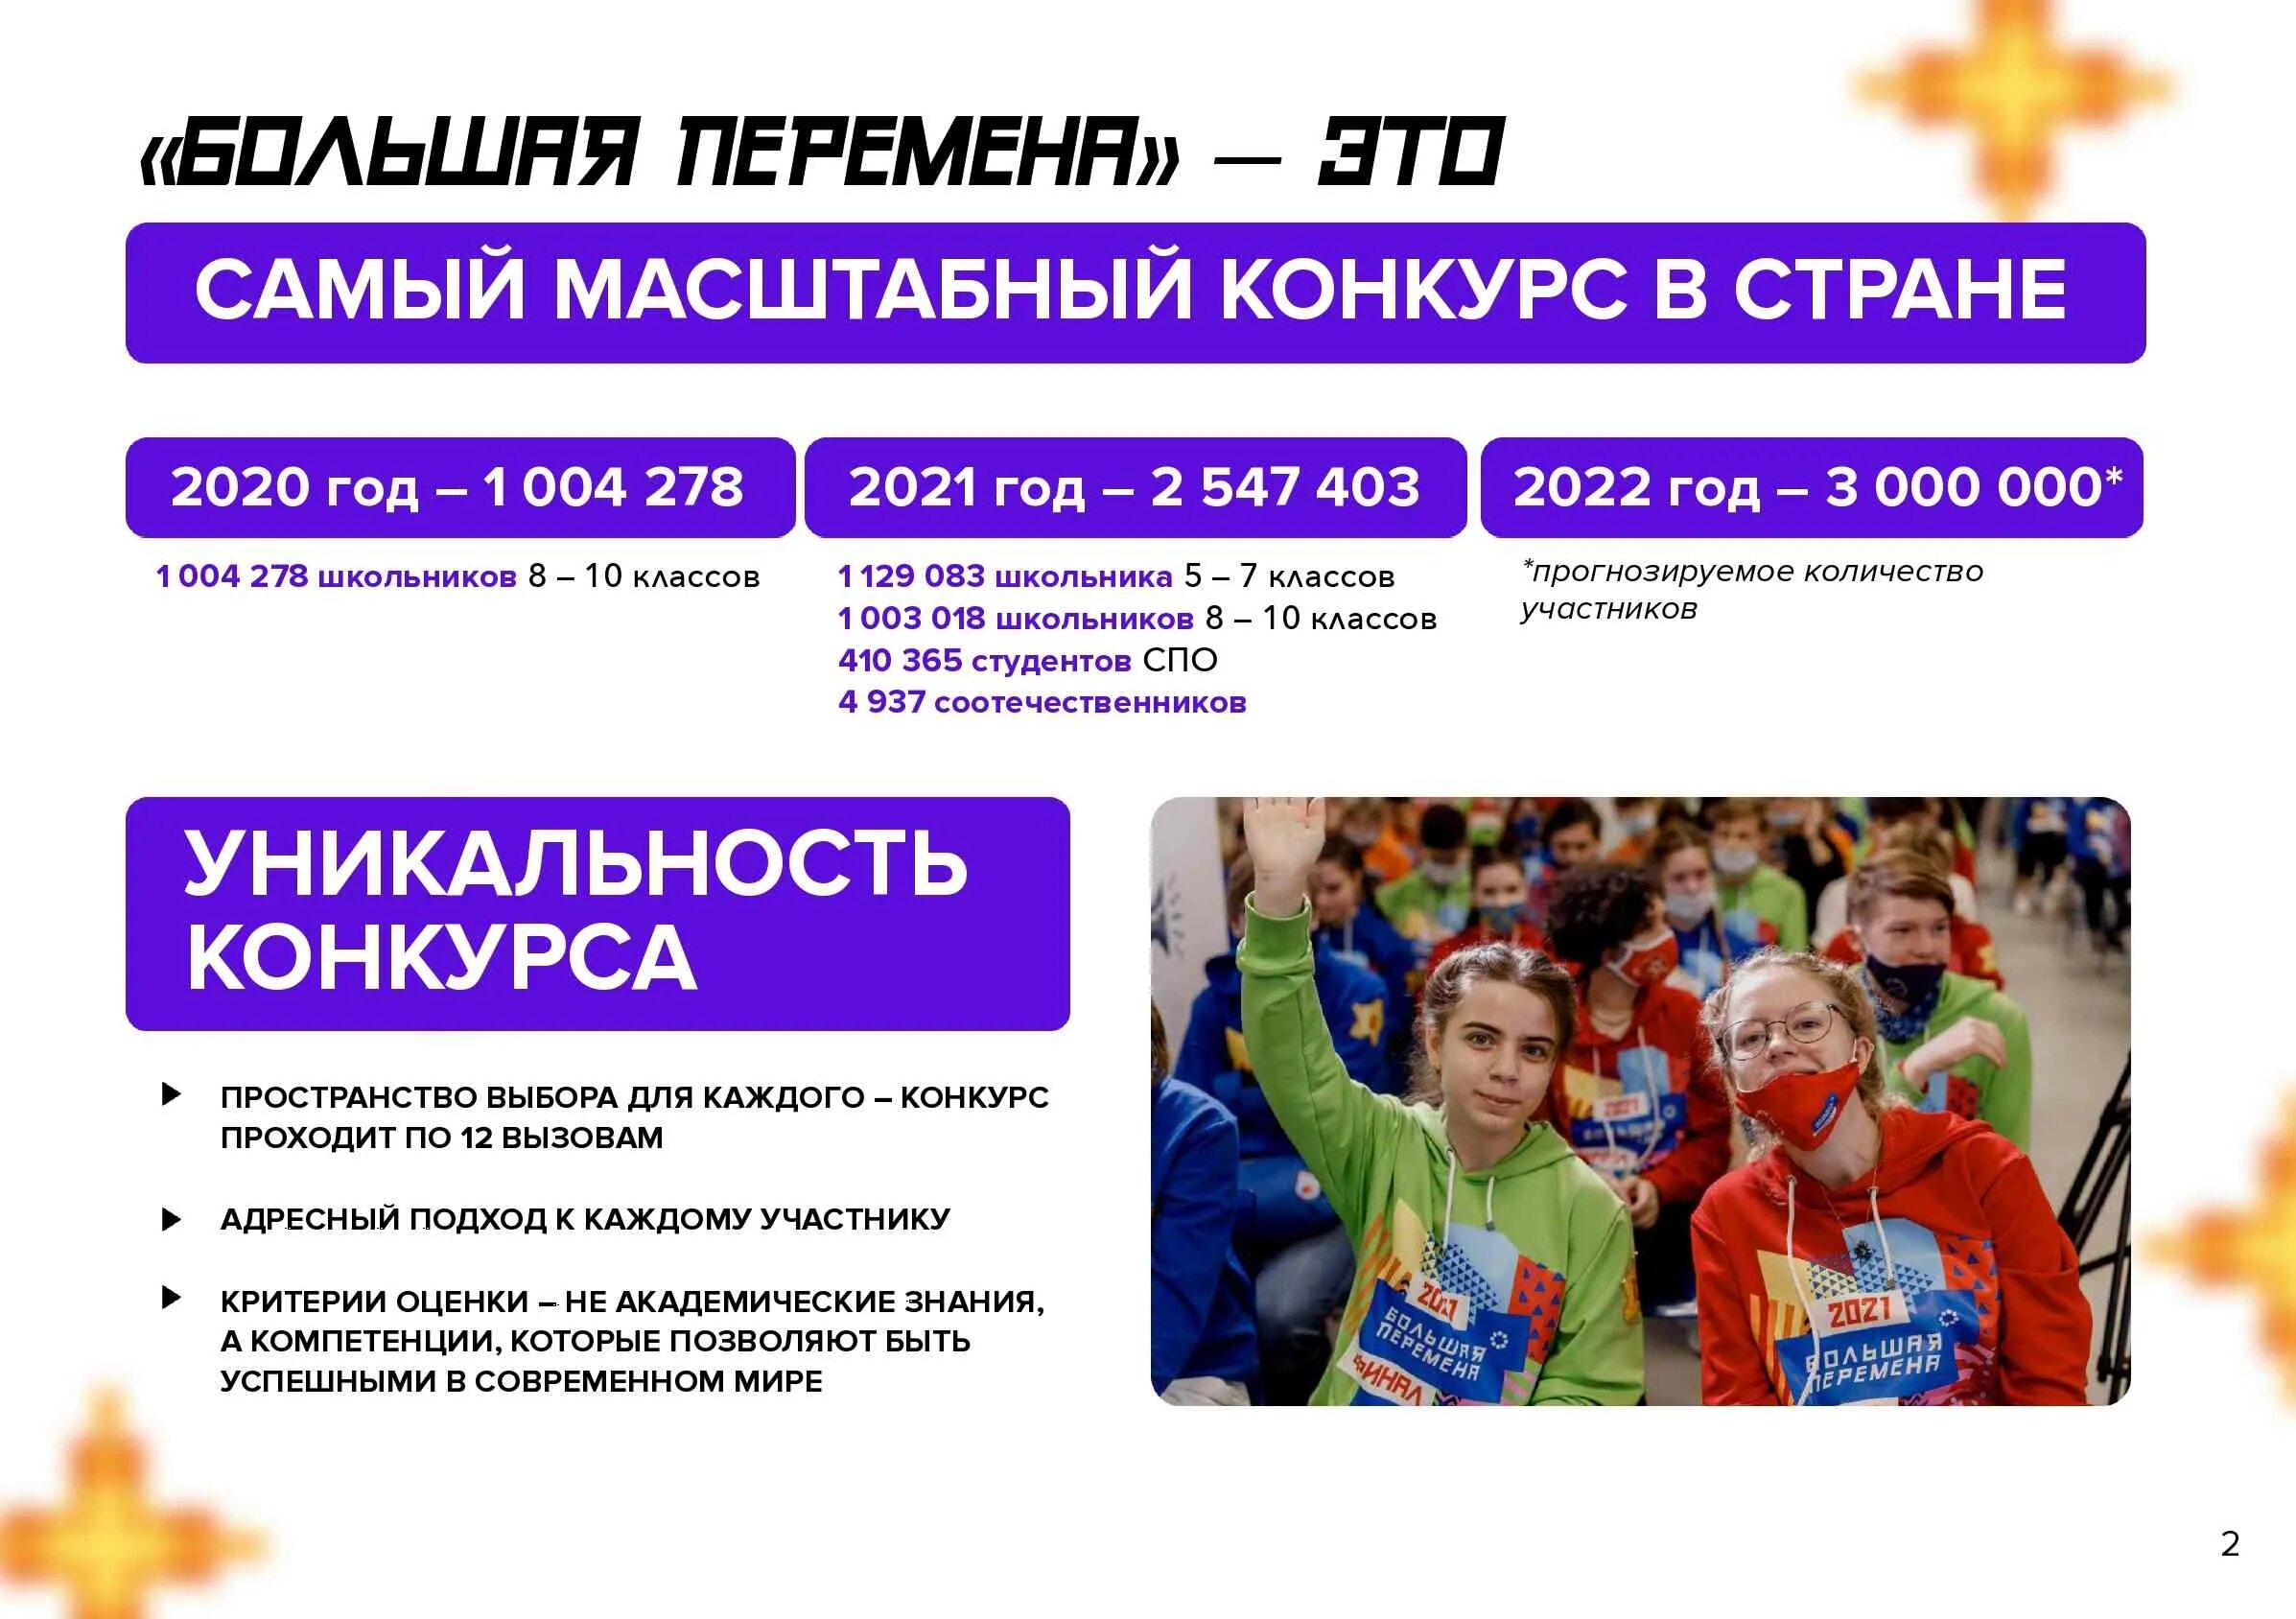 Всероссийский конкурс большая перемена 2022. Большая перемена конкурс для школьников 2022. Проект большая перемена 2022. Проект большая перемена для школьников что это такое. Перемена конкурсы